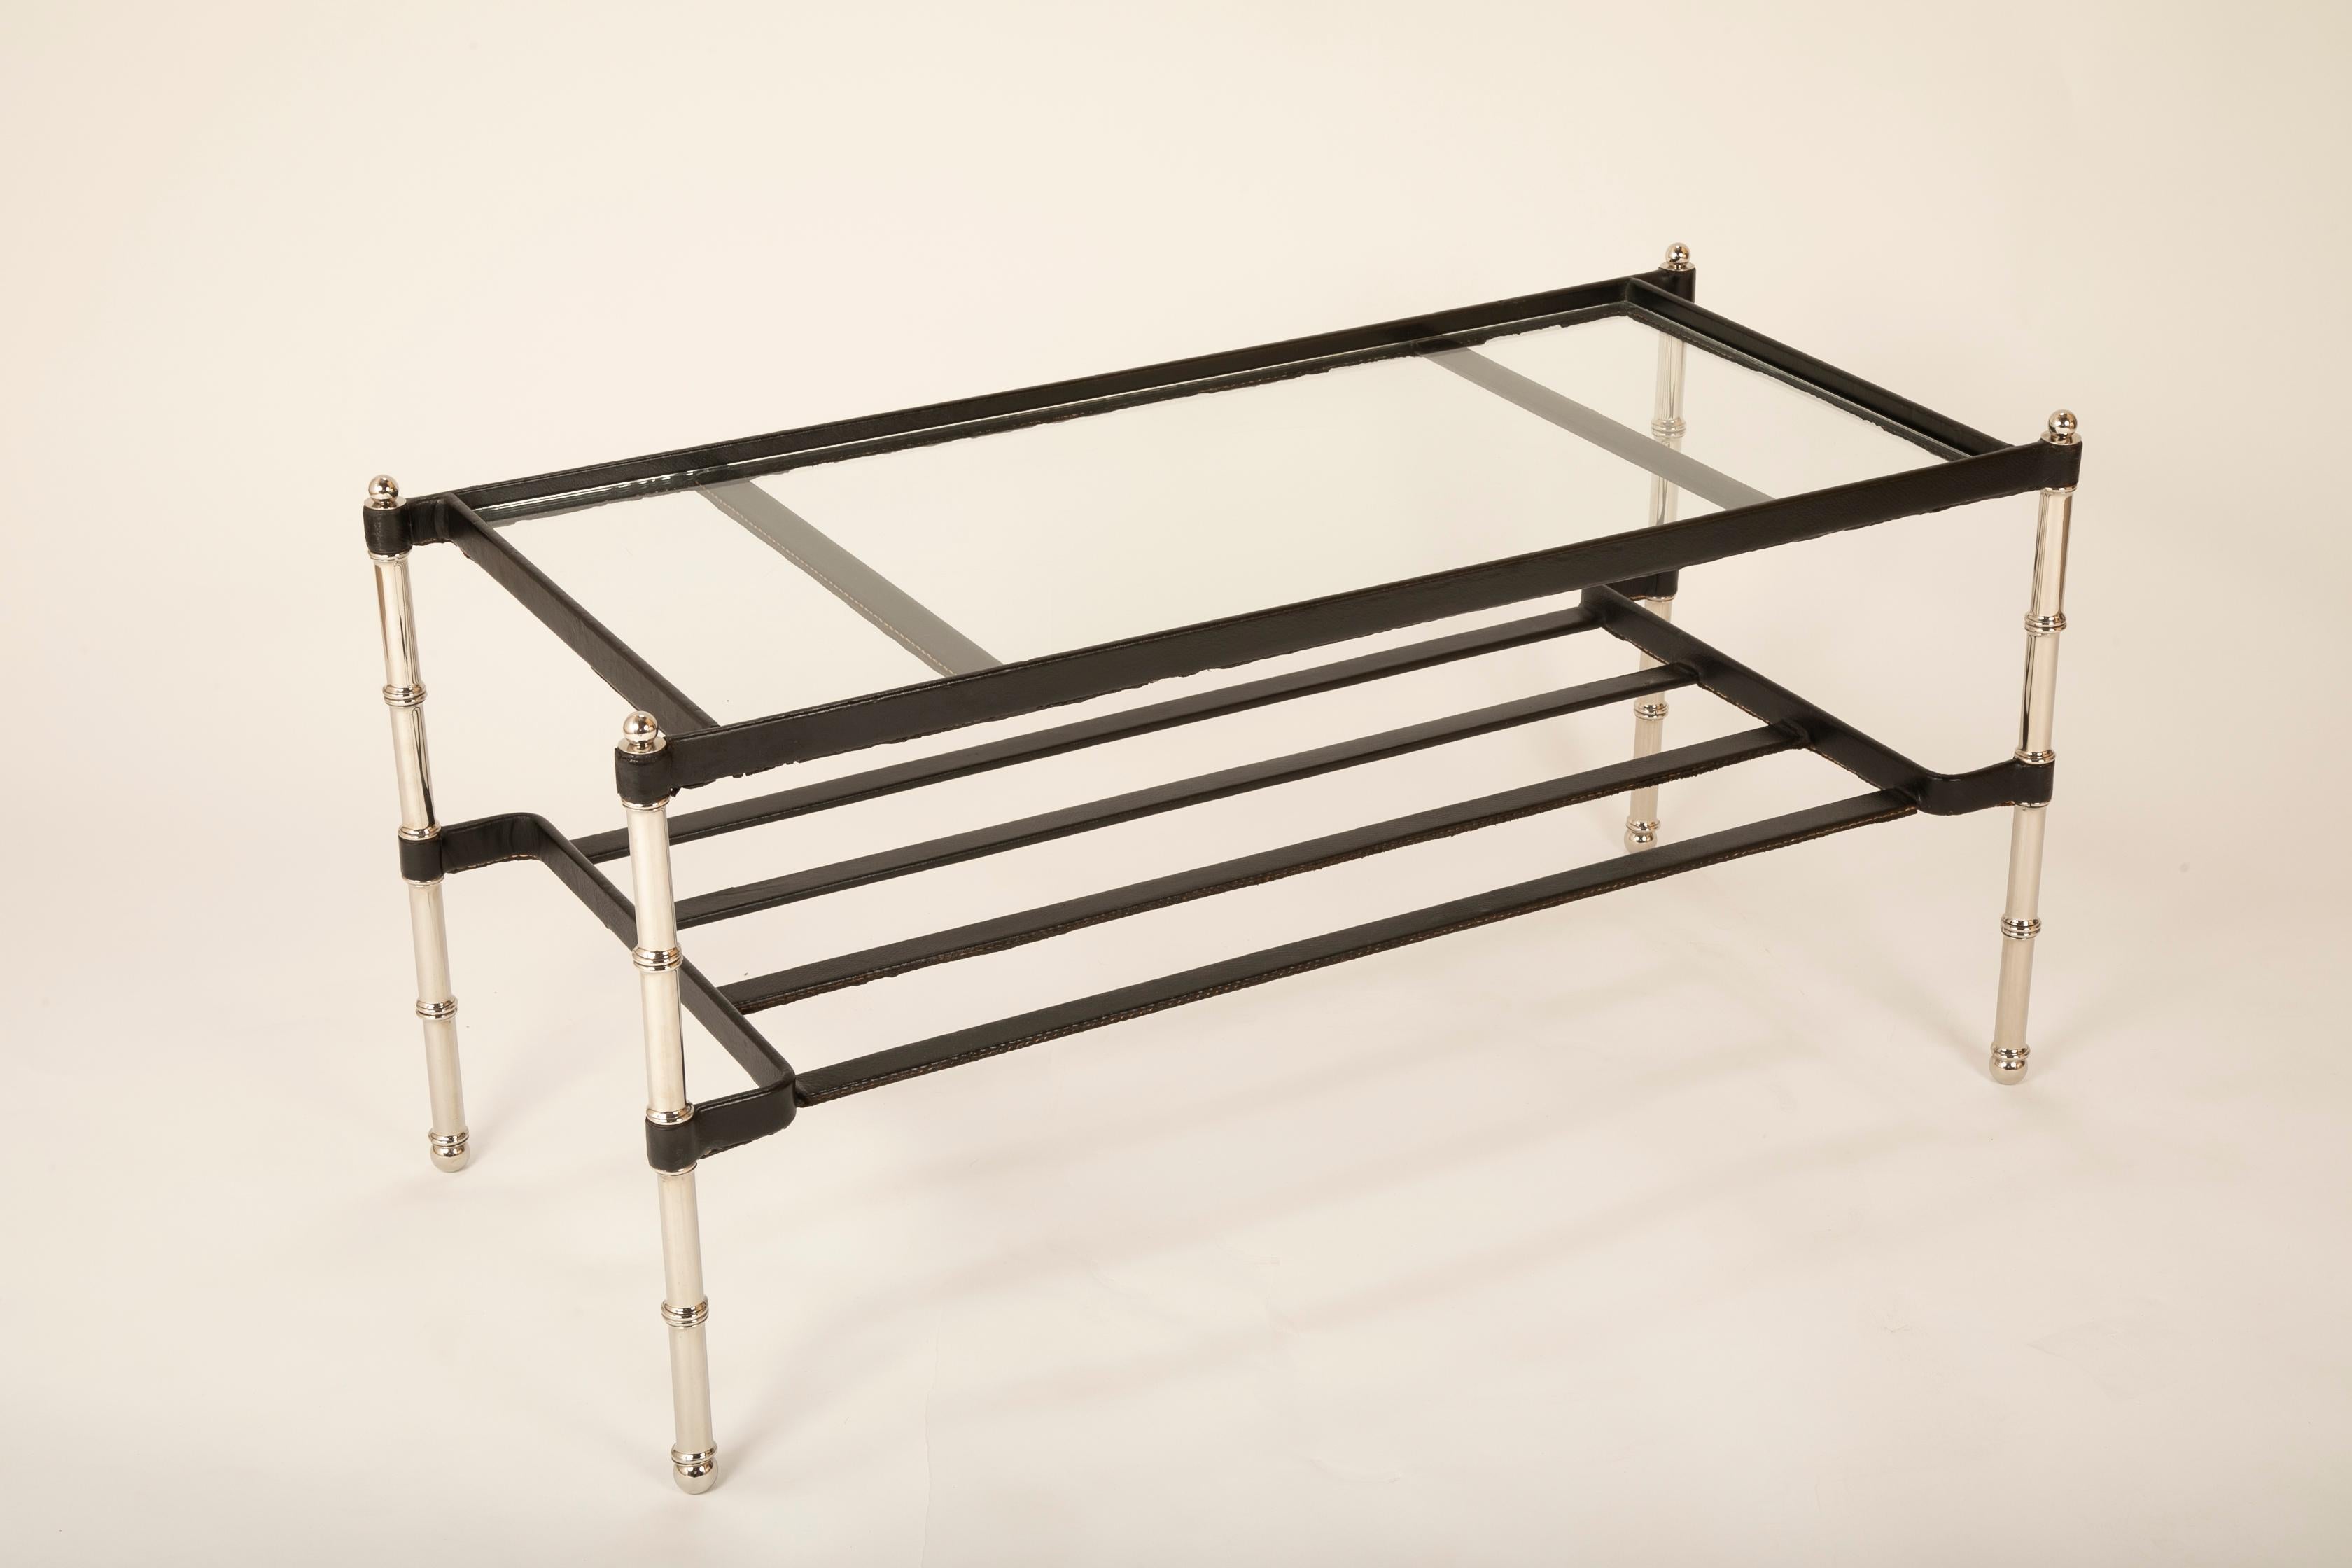 Table basse en chrome recouverte de cuir cousu main, conçue par Jacques Adnet, avec plateau en verre.